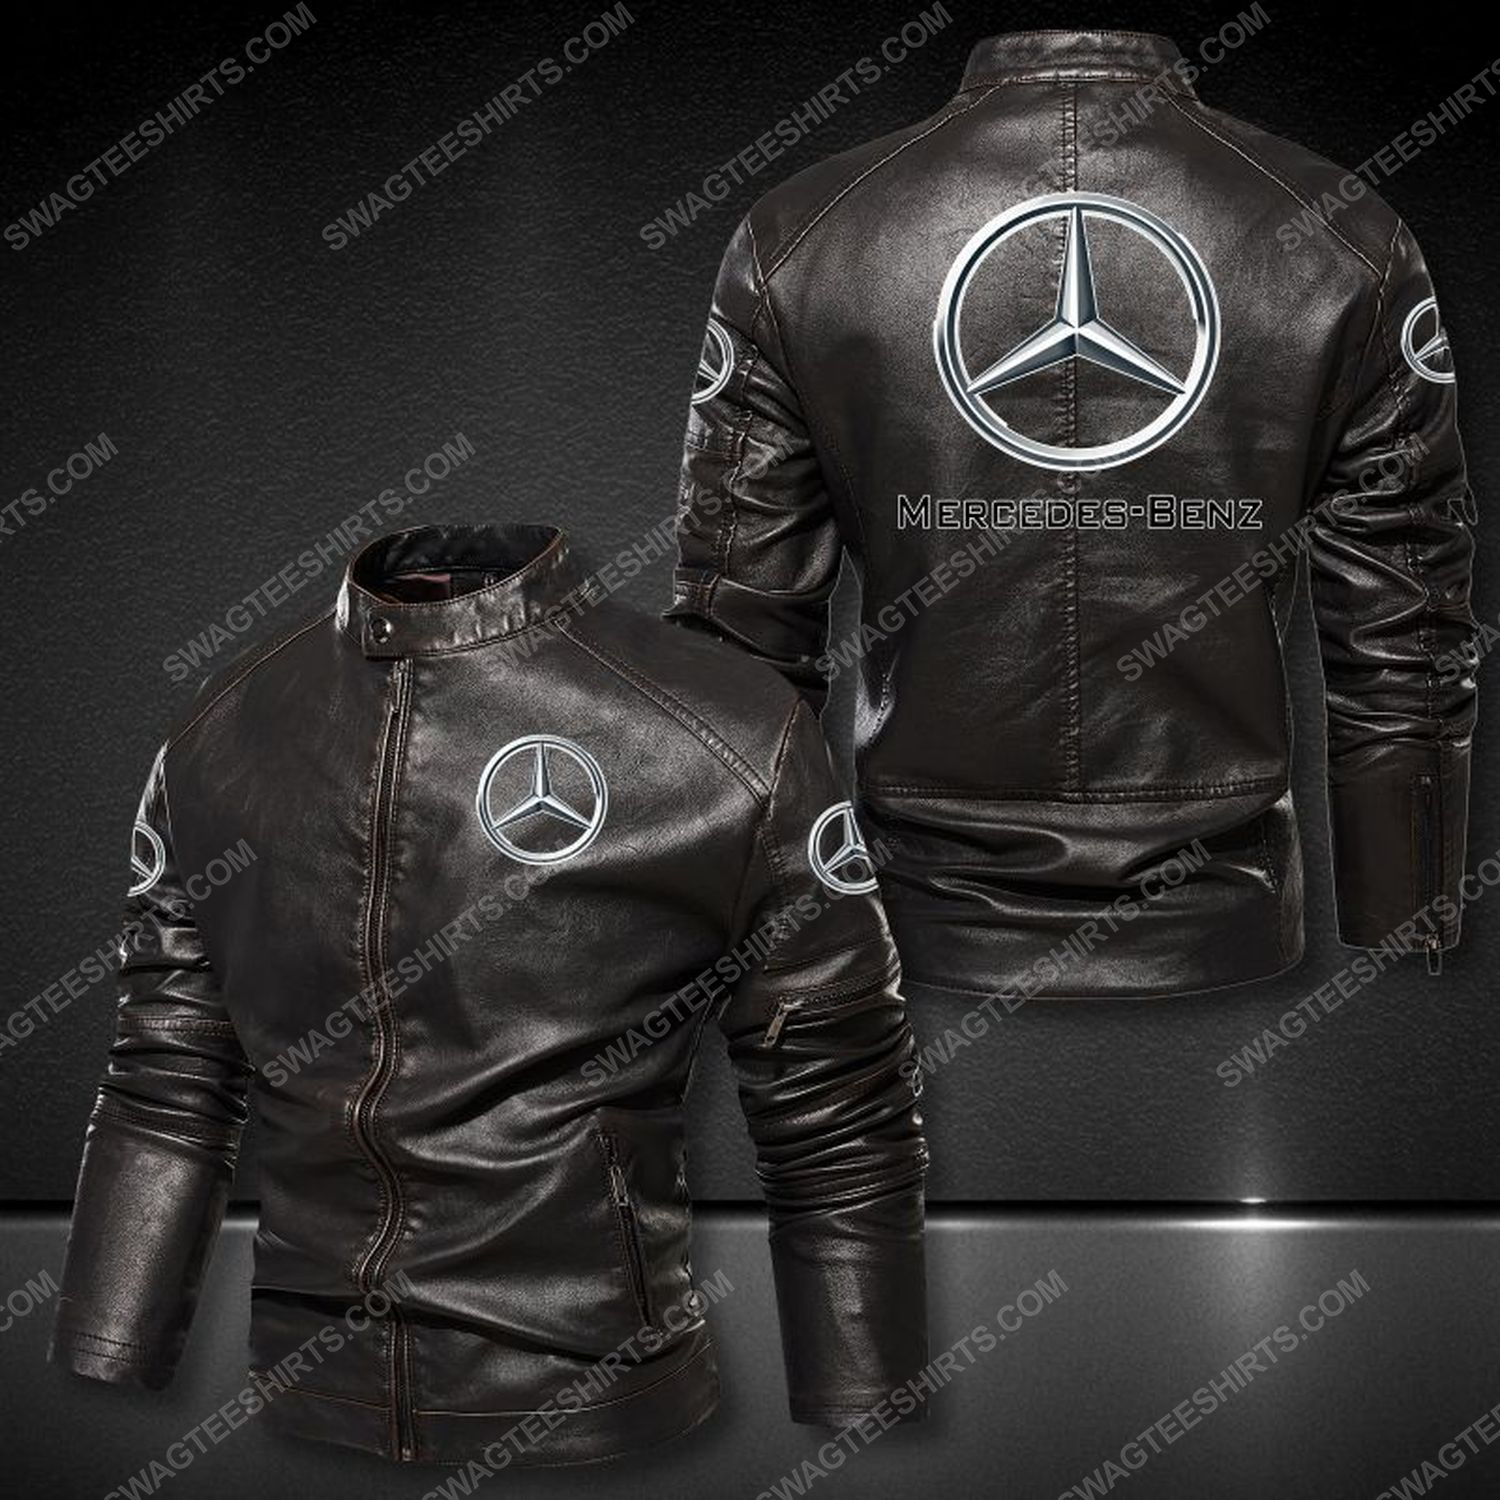 Mercedes-benz sports car leather jacket 1